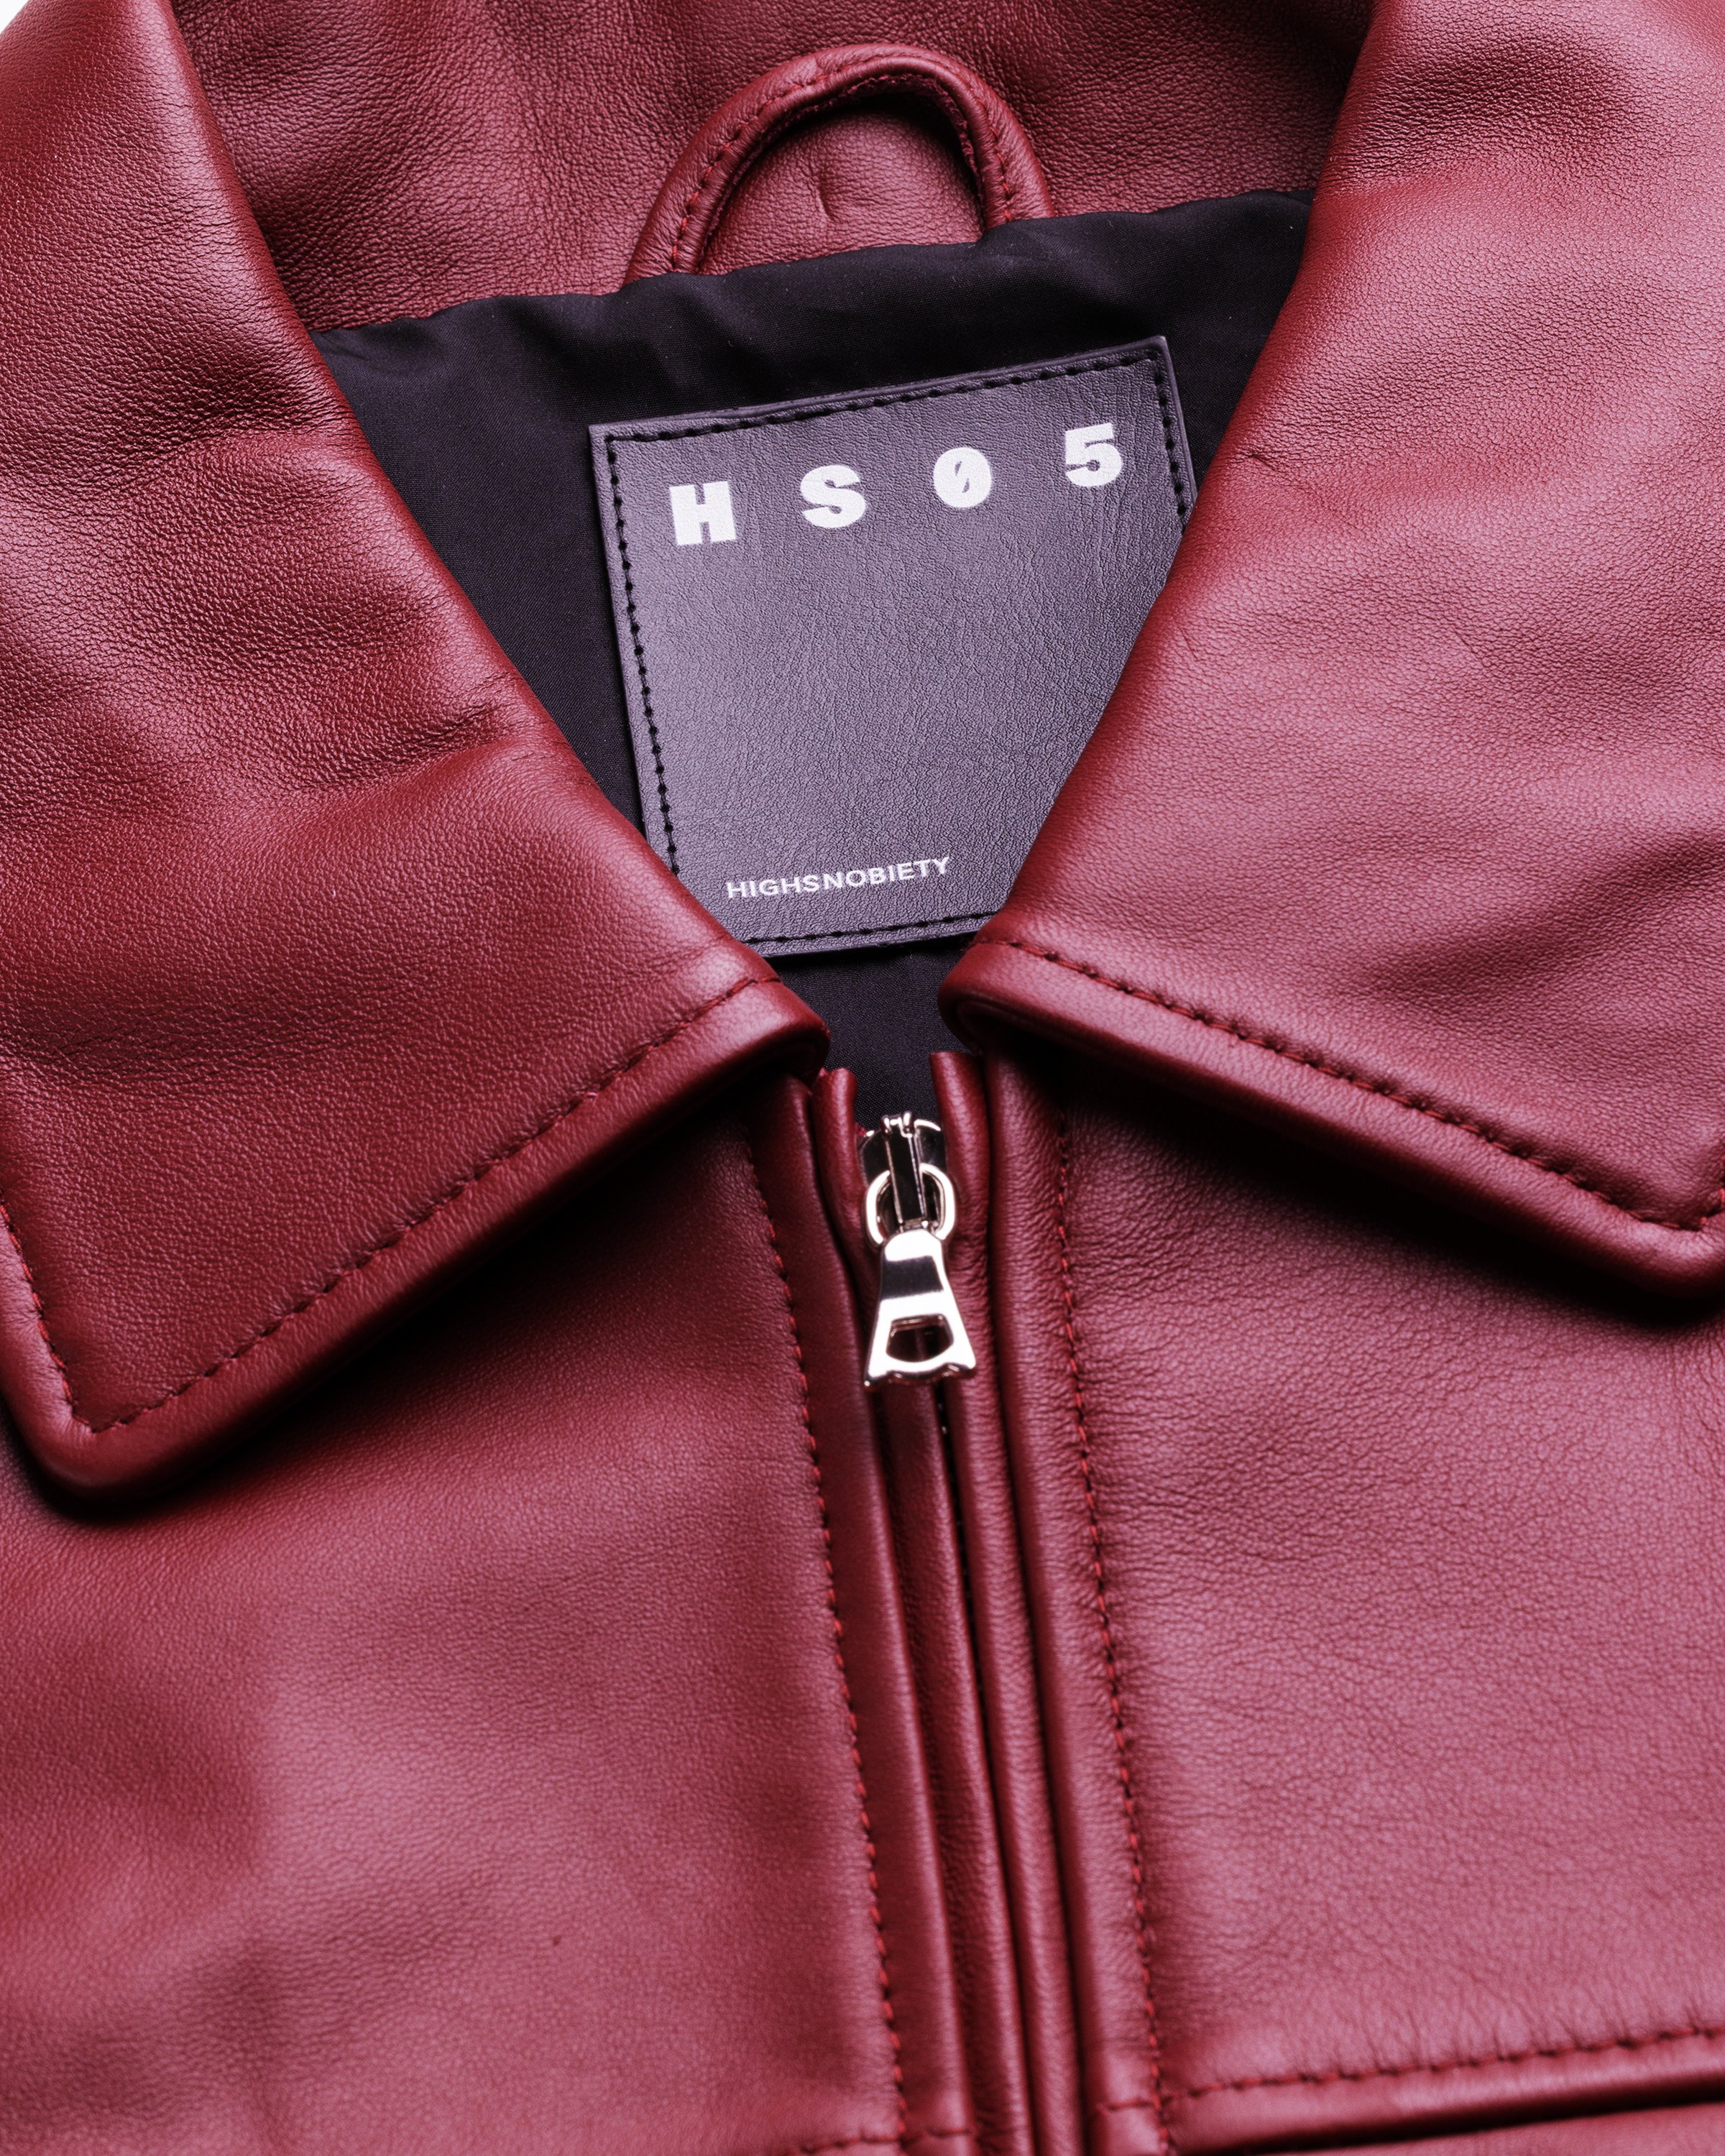 Highsnobiety HS05 - Leather Jacket Burgundy - Clothing - Burgundy - Image 9